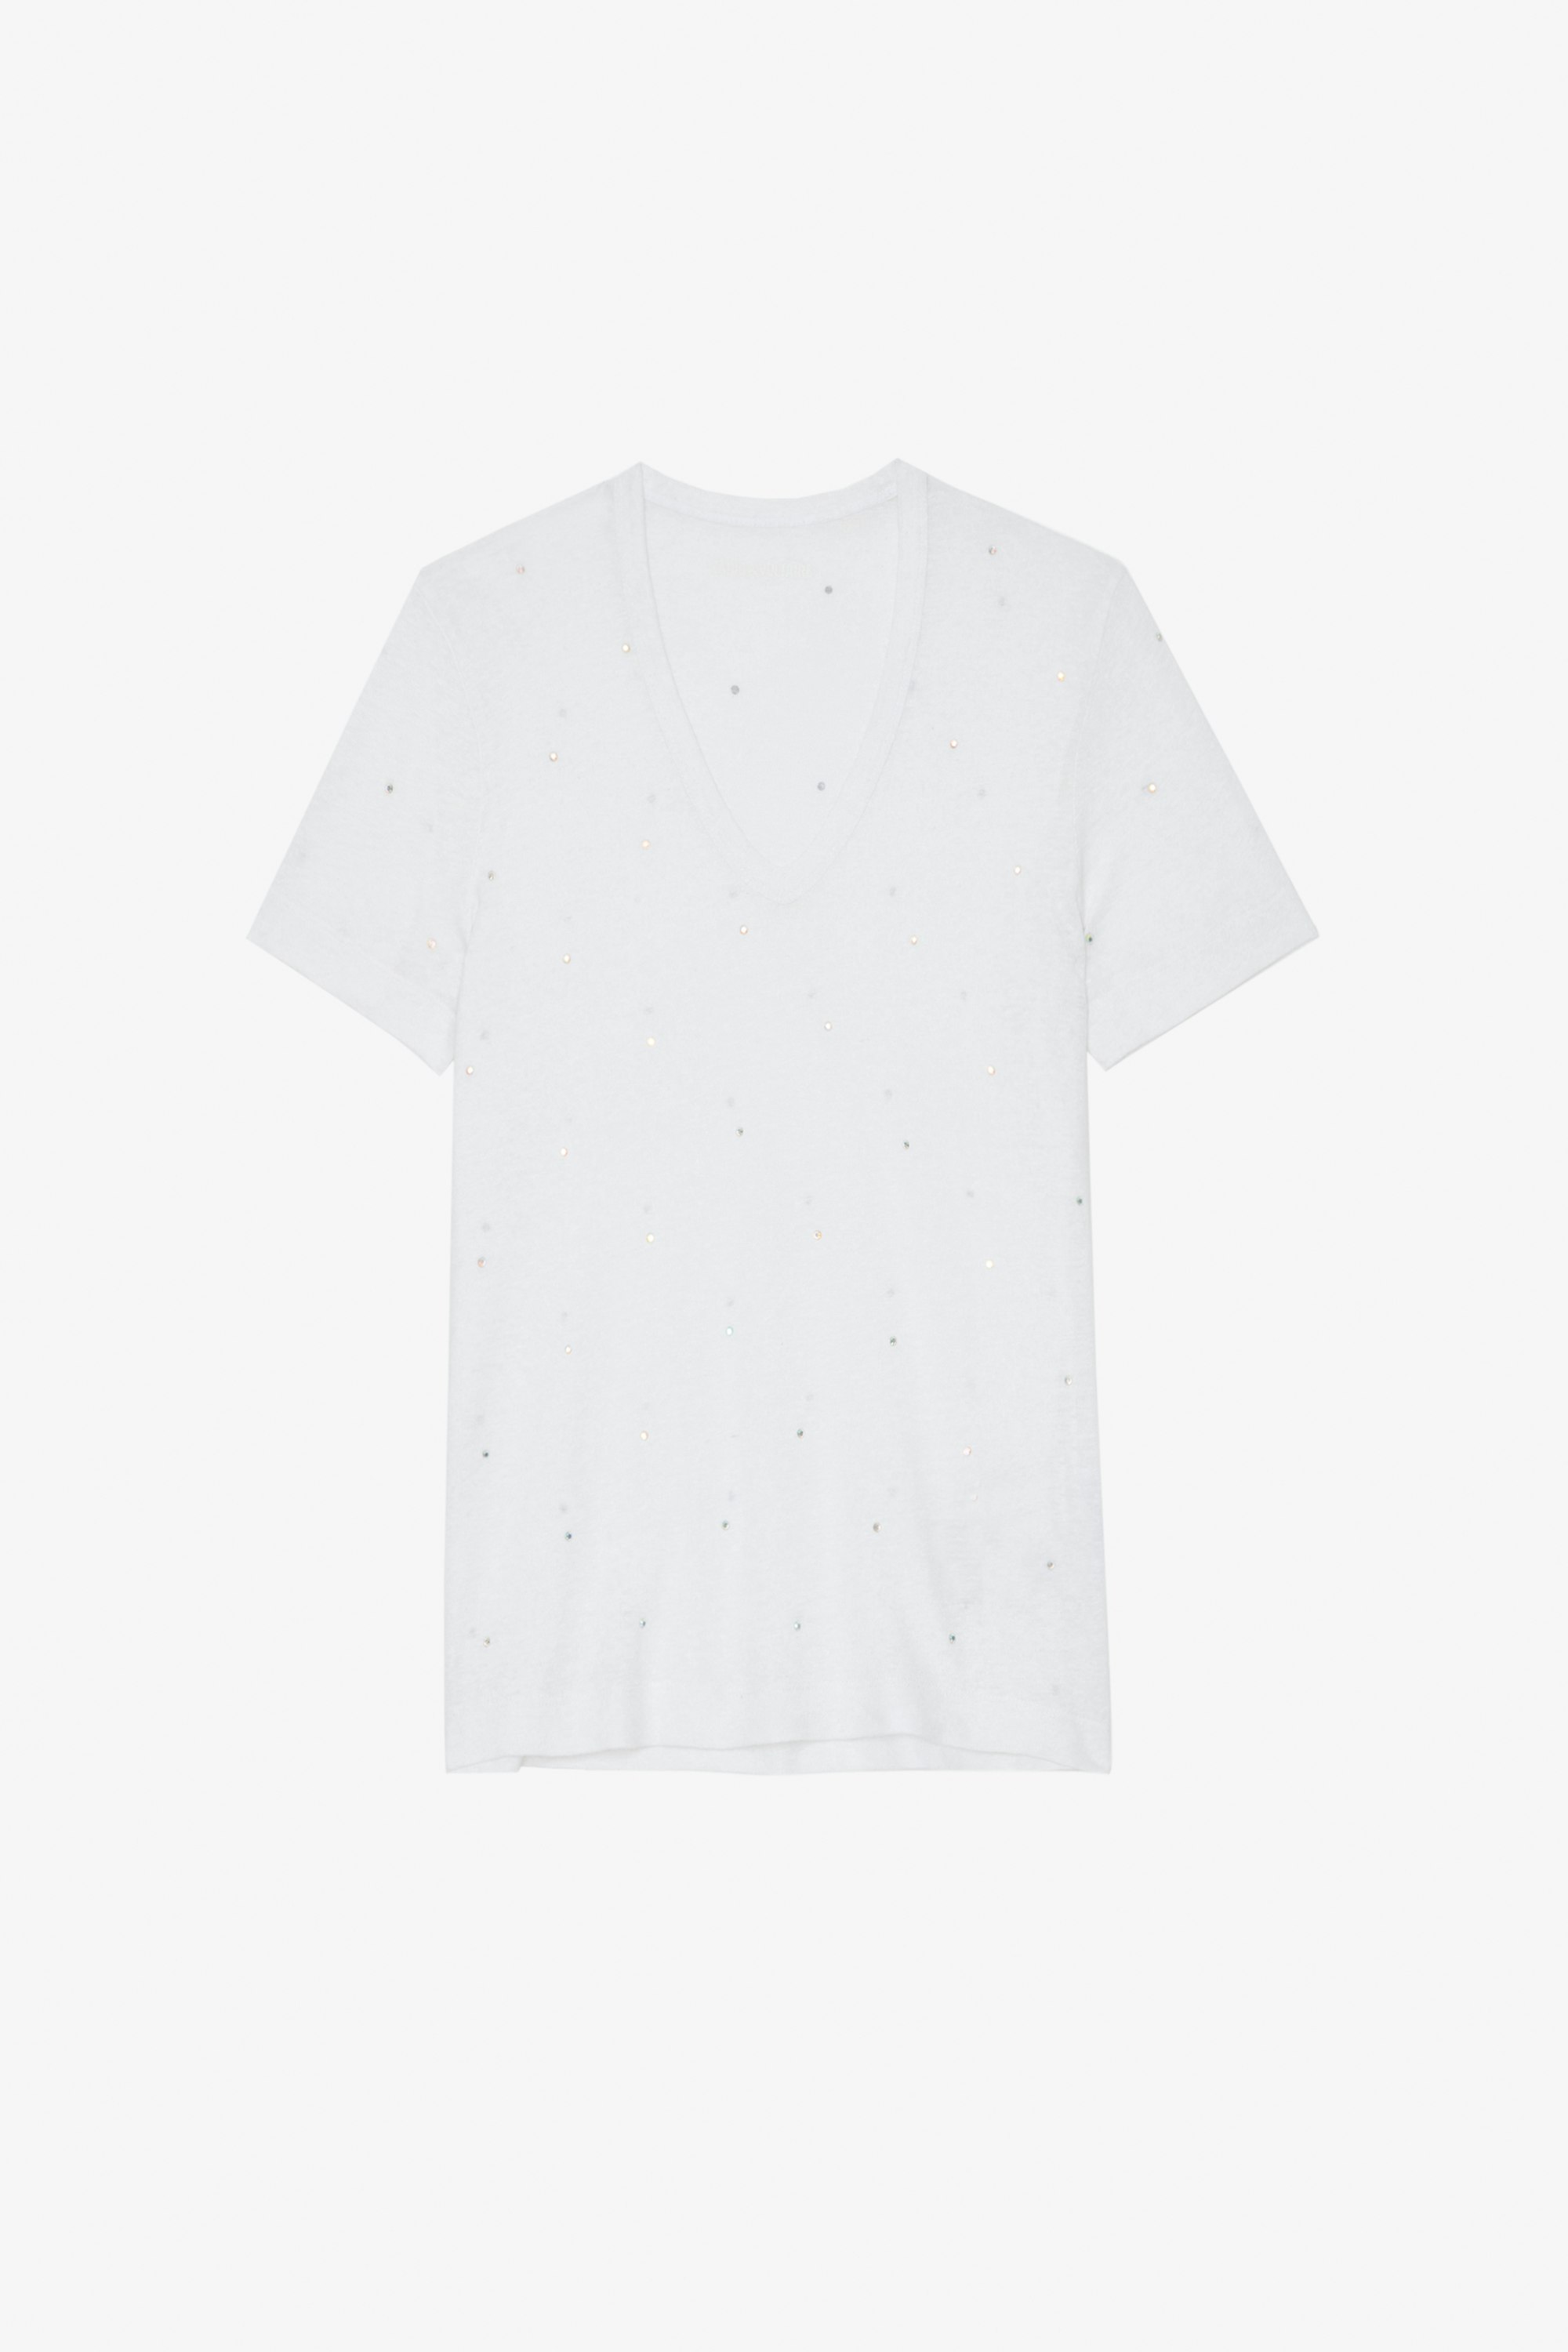 Camiseta Wassa Camiseta color blanco con cristales Mujer